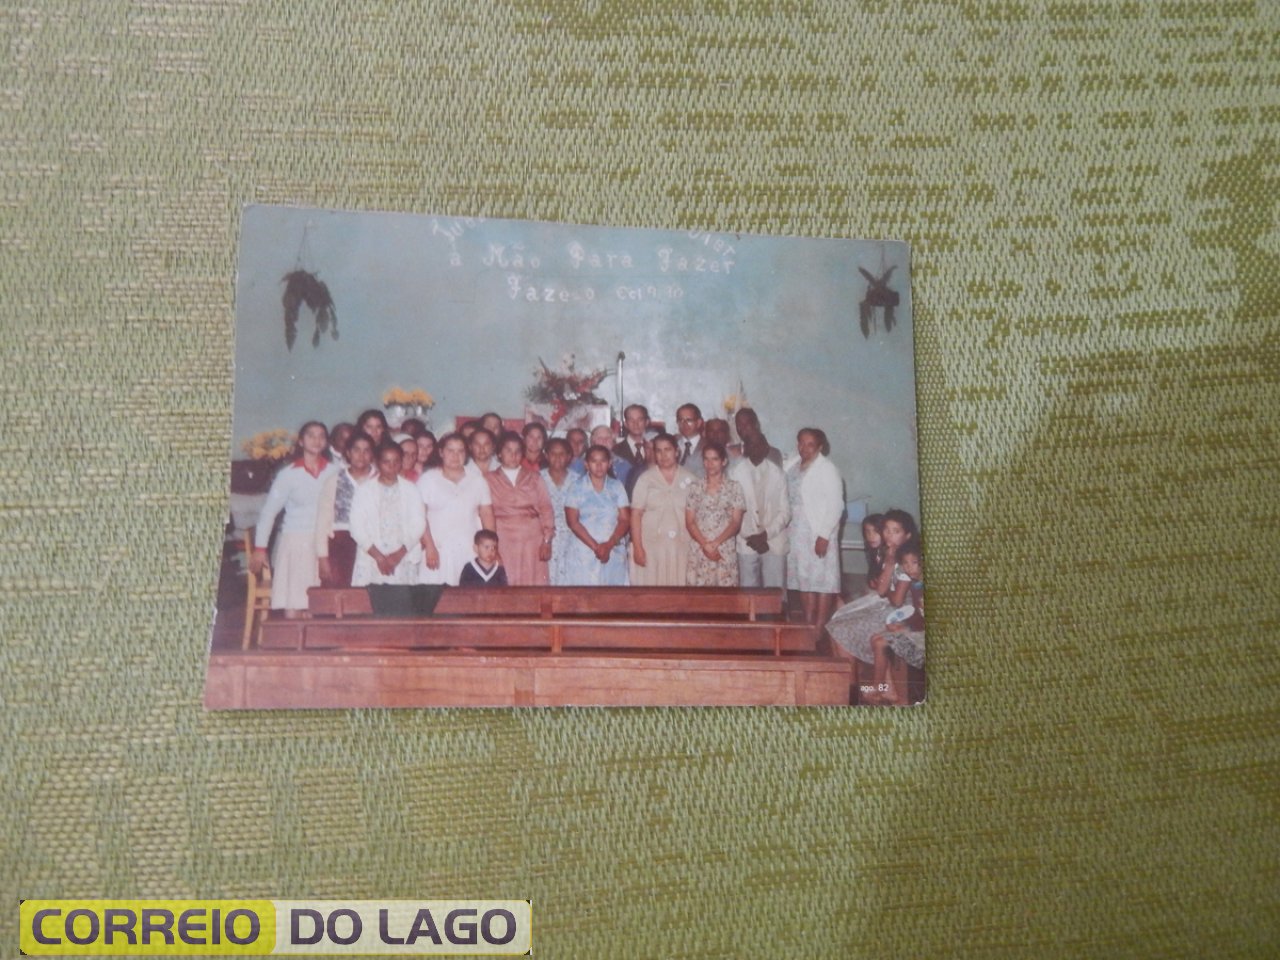 Ana Rosa Galvão e o grupo de fiéis da Igreja Assembléia de Deus. Vera Cruz do Oeste. Década de 1990.